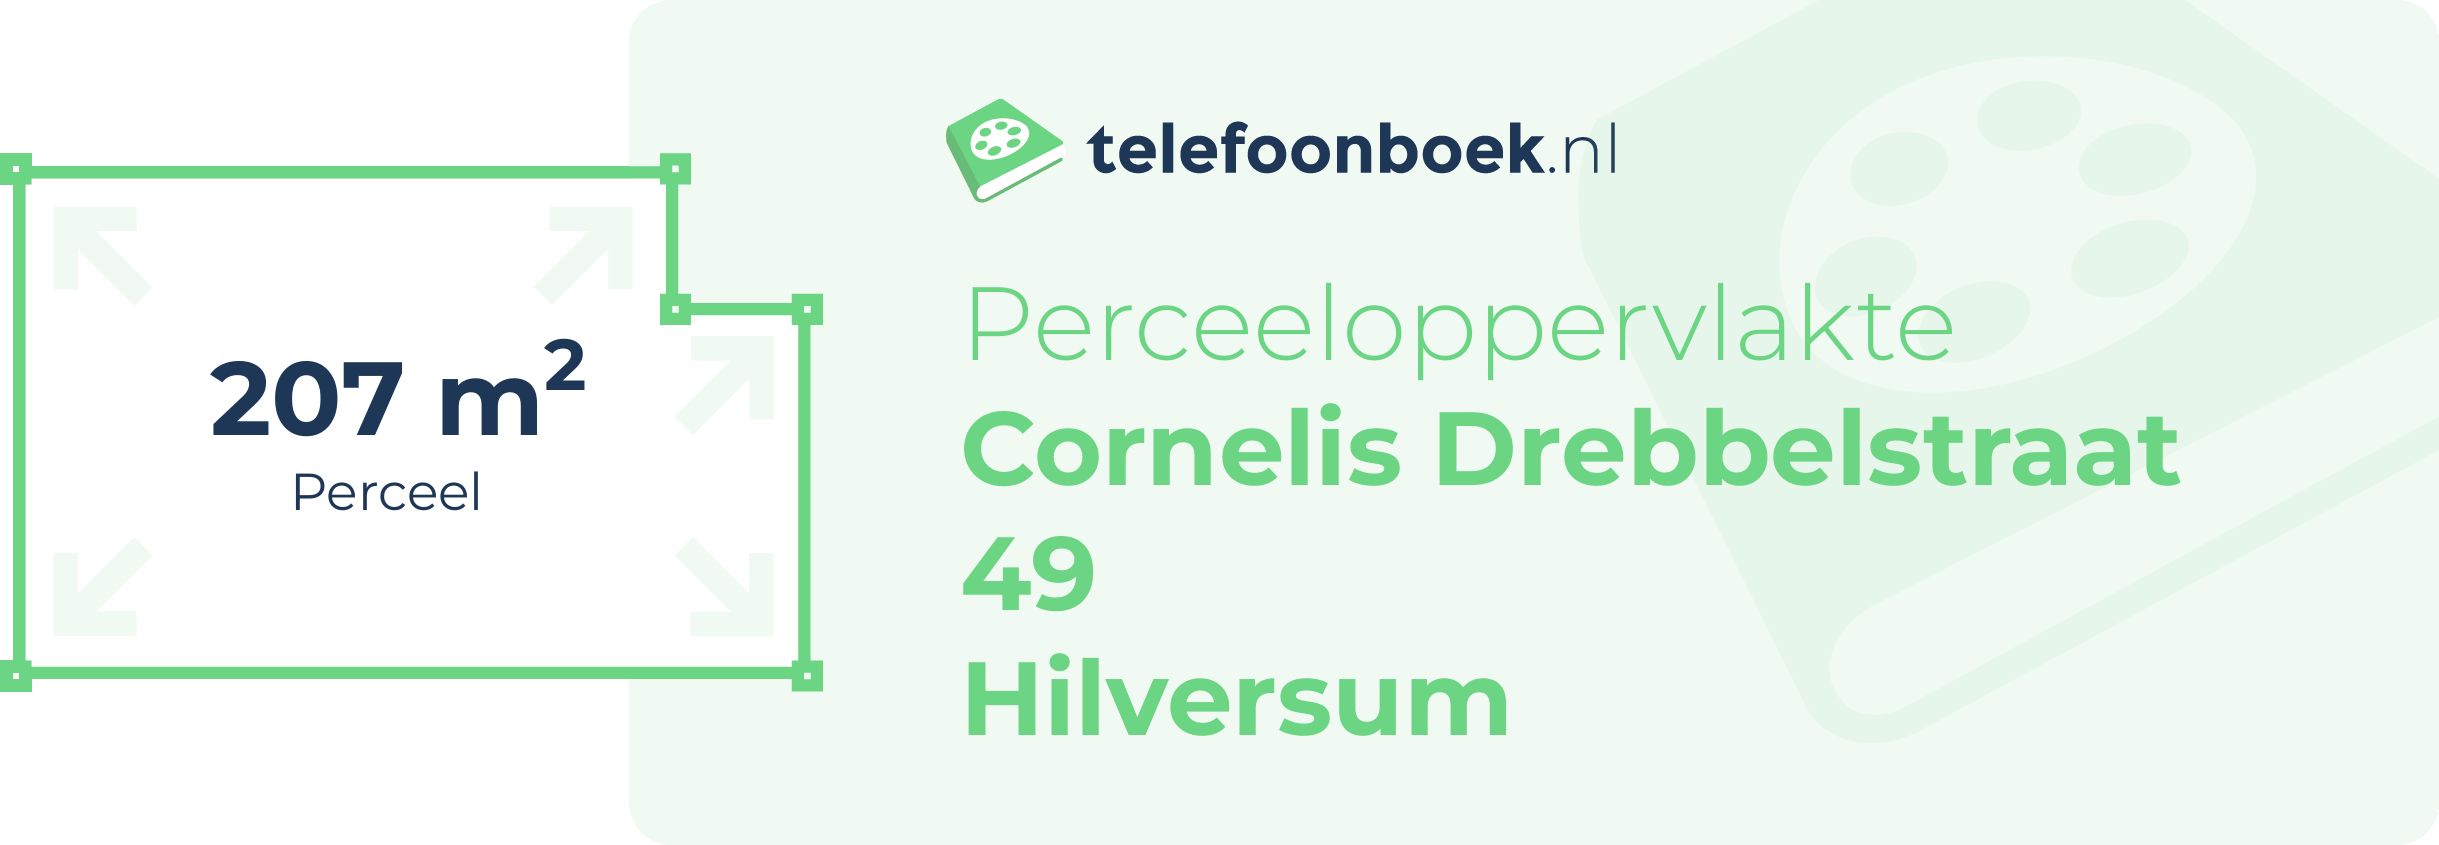 Perceeloppervlakte Cornelis Drebbelstraat 49 Hilversum